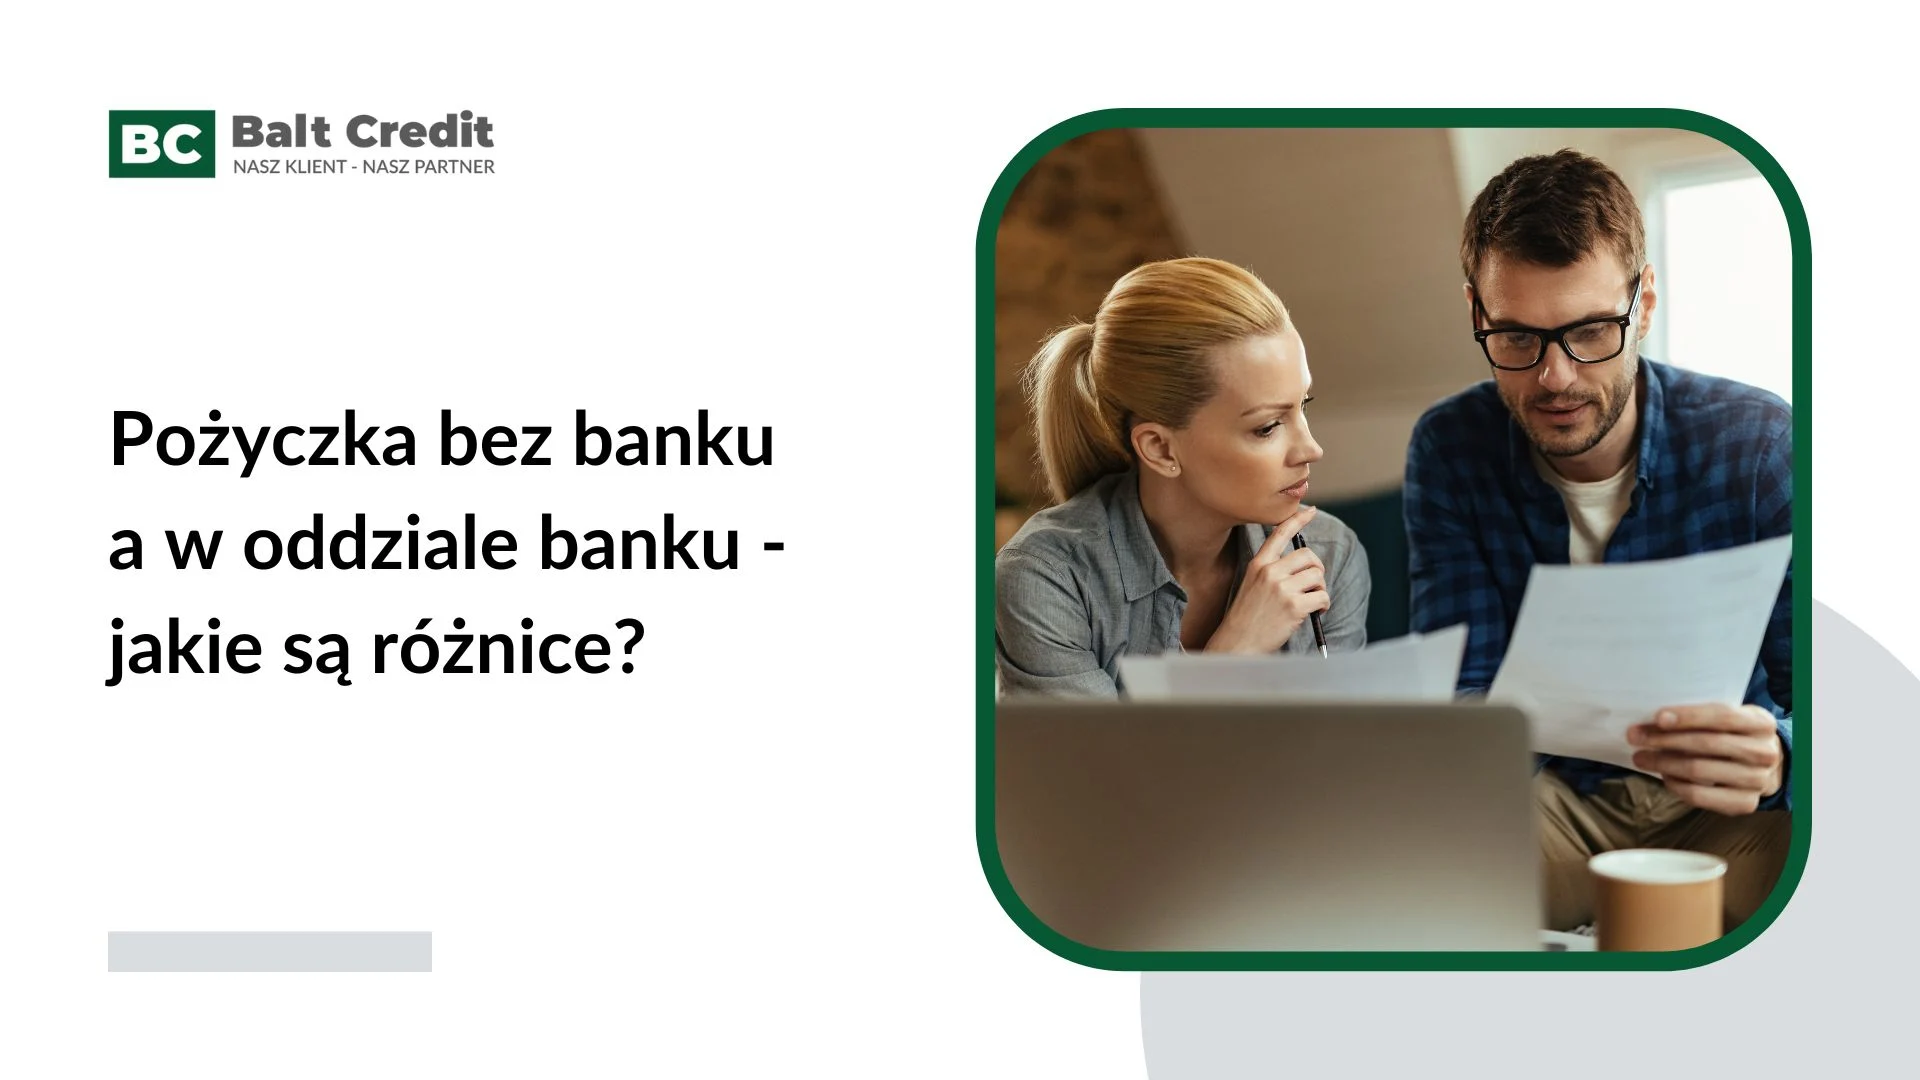 Pożyczka bez banku a w oddziale banku - jakie są różnice?